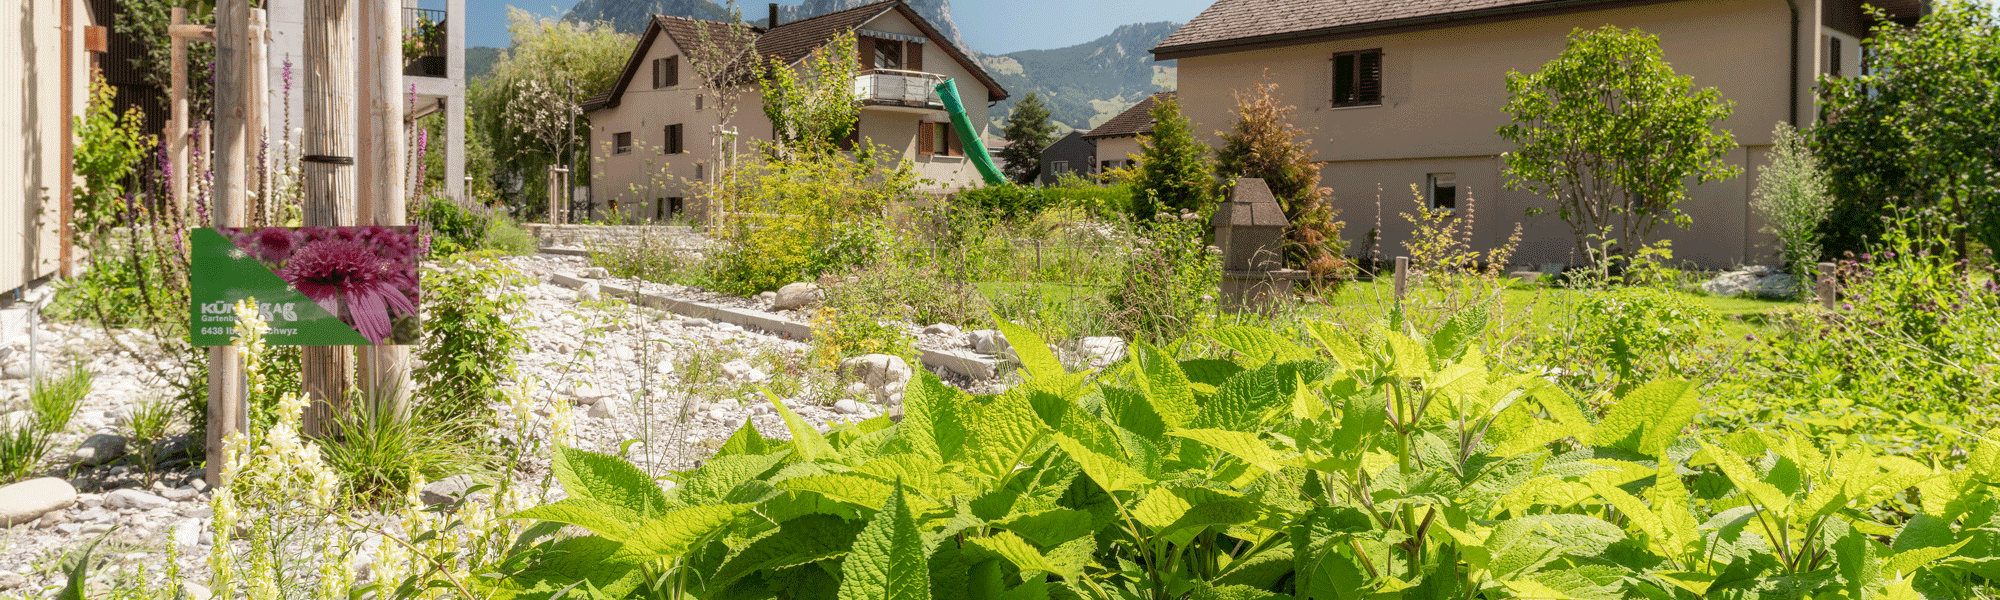 Gemeinde Brunnen und Baugenossenschaft Familia Ingenbohl bauen direkt an der Gotthardbahnlinie ein Mehrfamilienhaus – mit viel Biodiversität und Nachhaltigkeit.